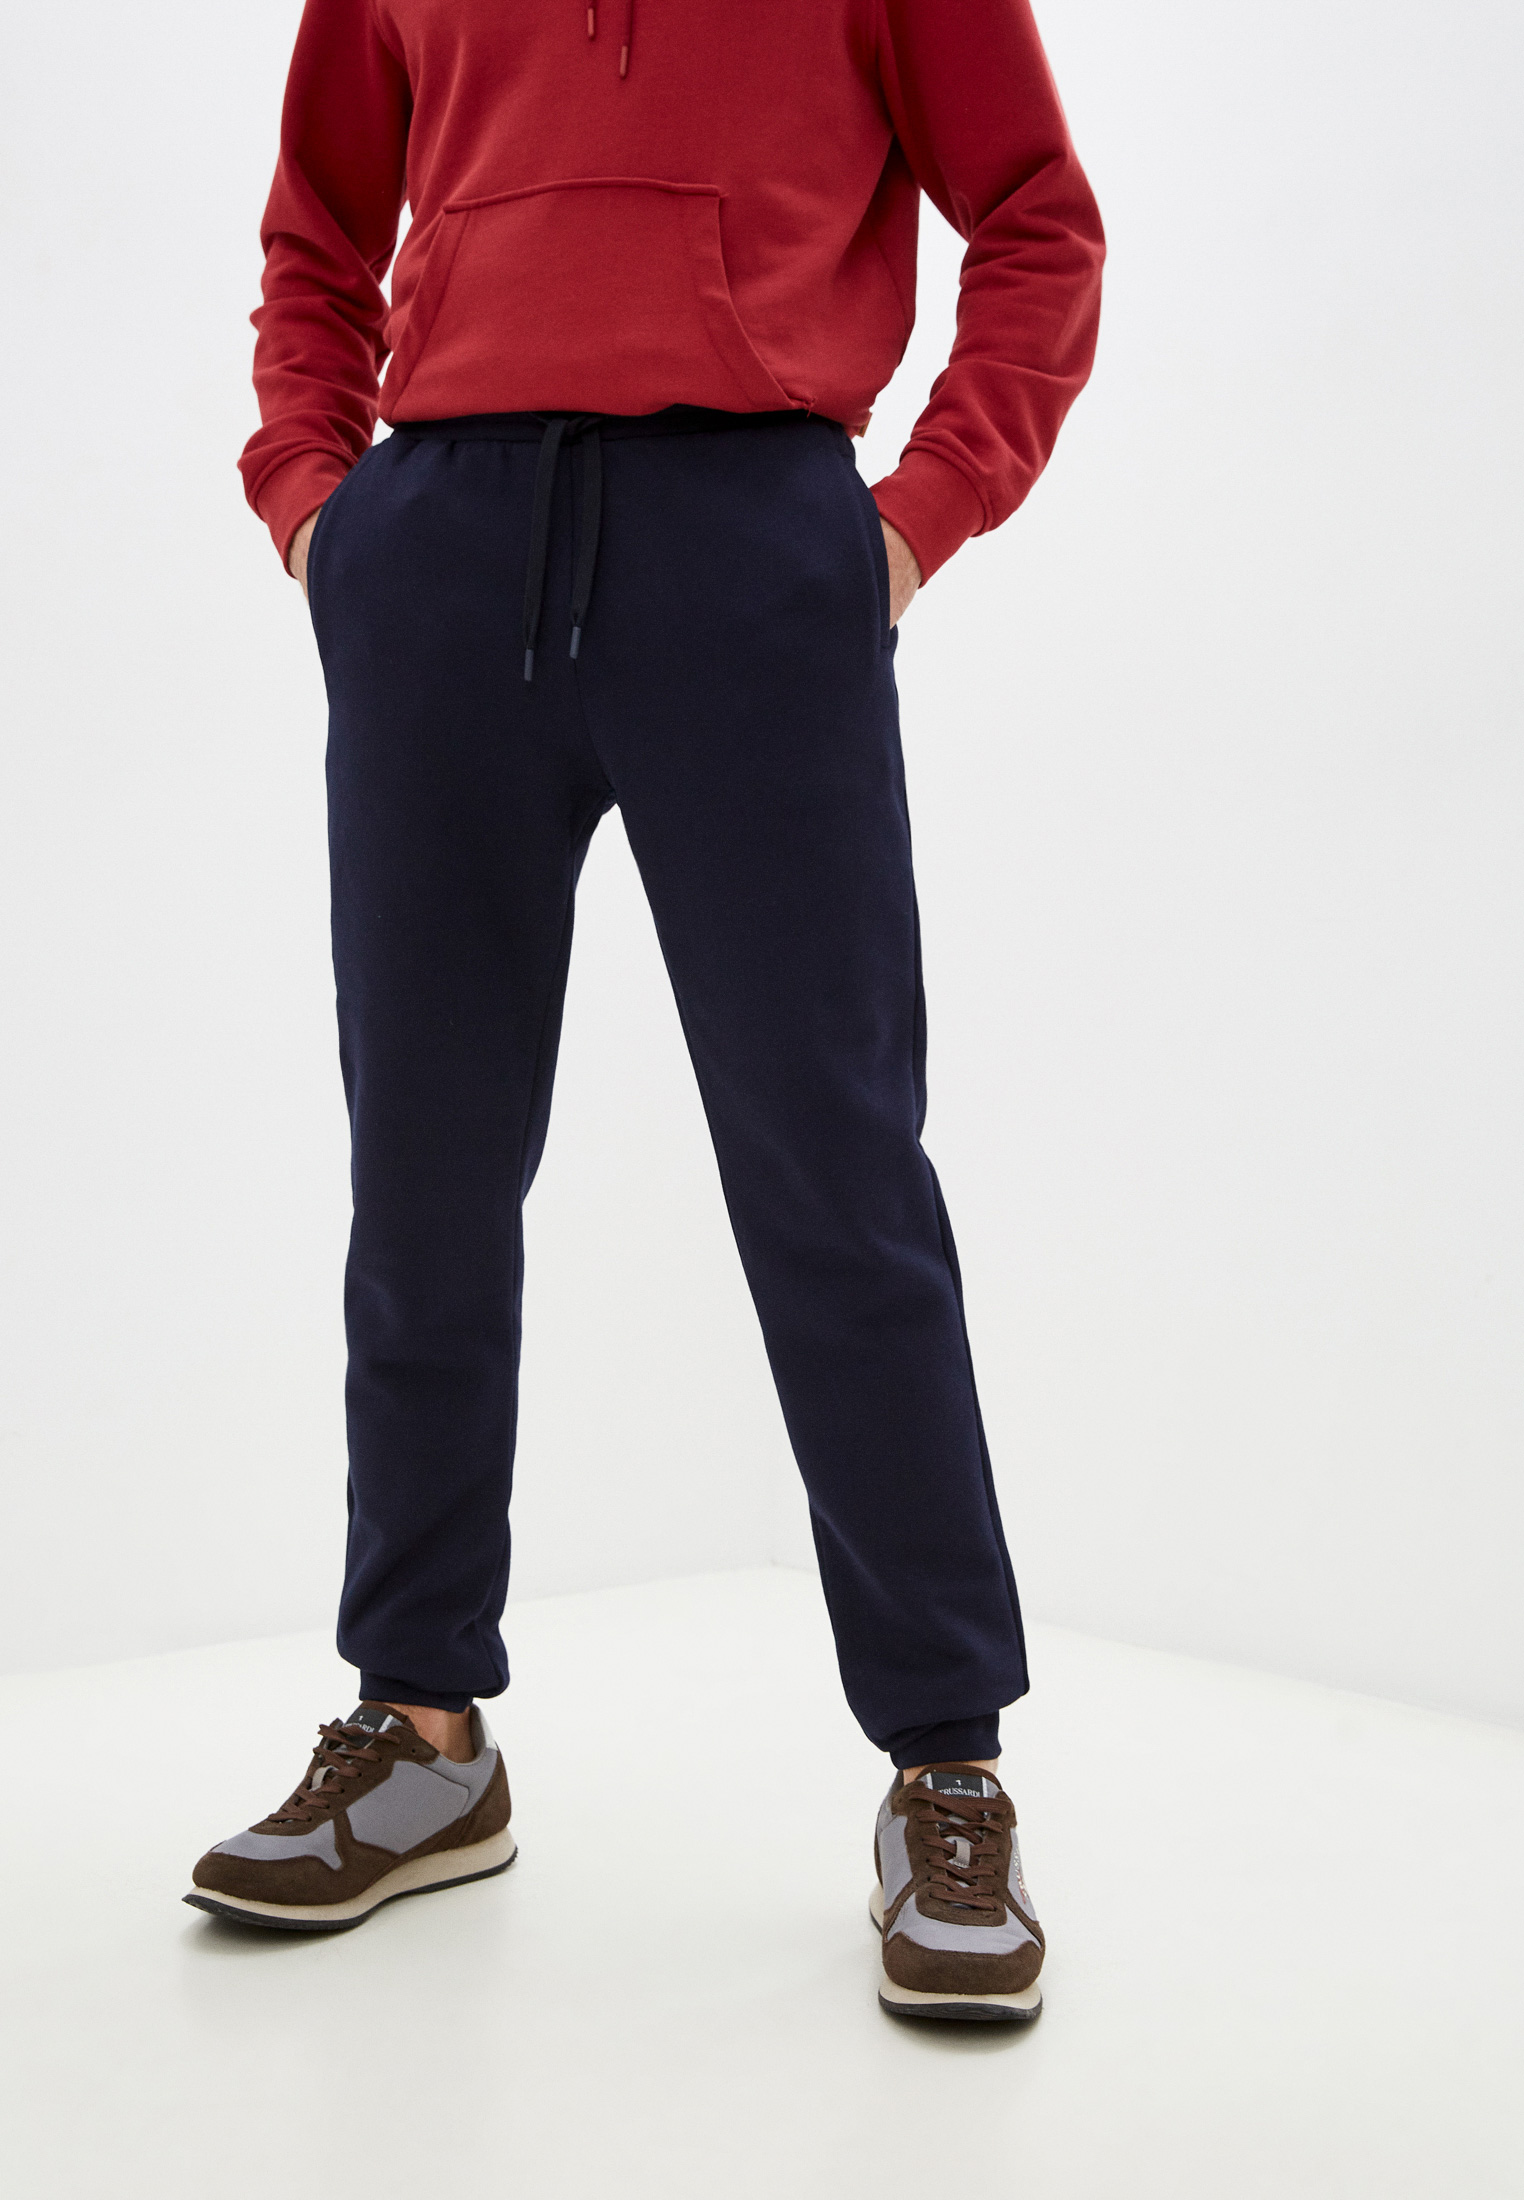 Мужские спортивные брюки Trussardi (Труссарди) 52P00206-1T005460: изображение 1